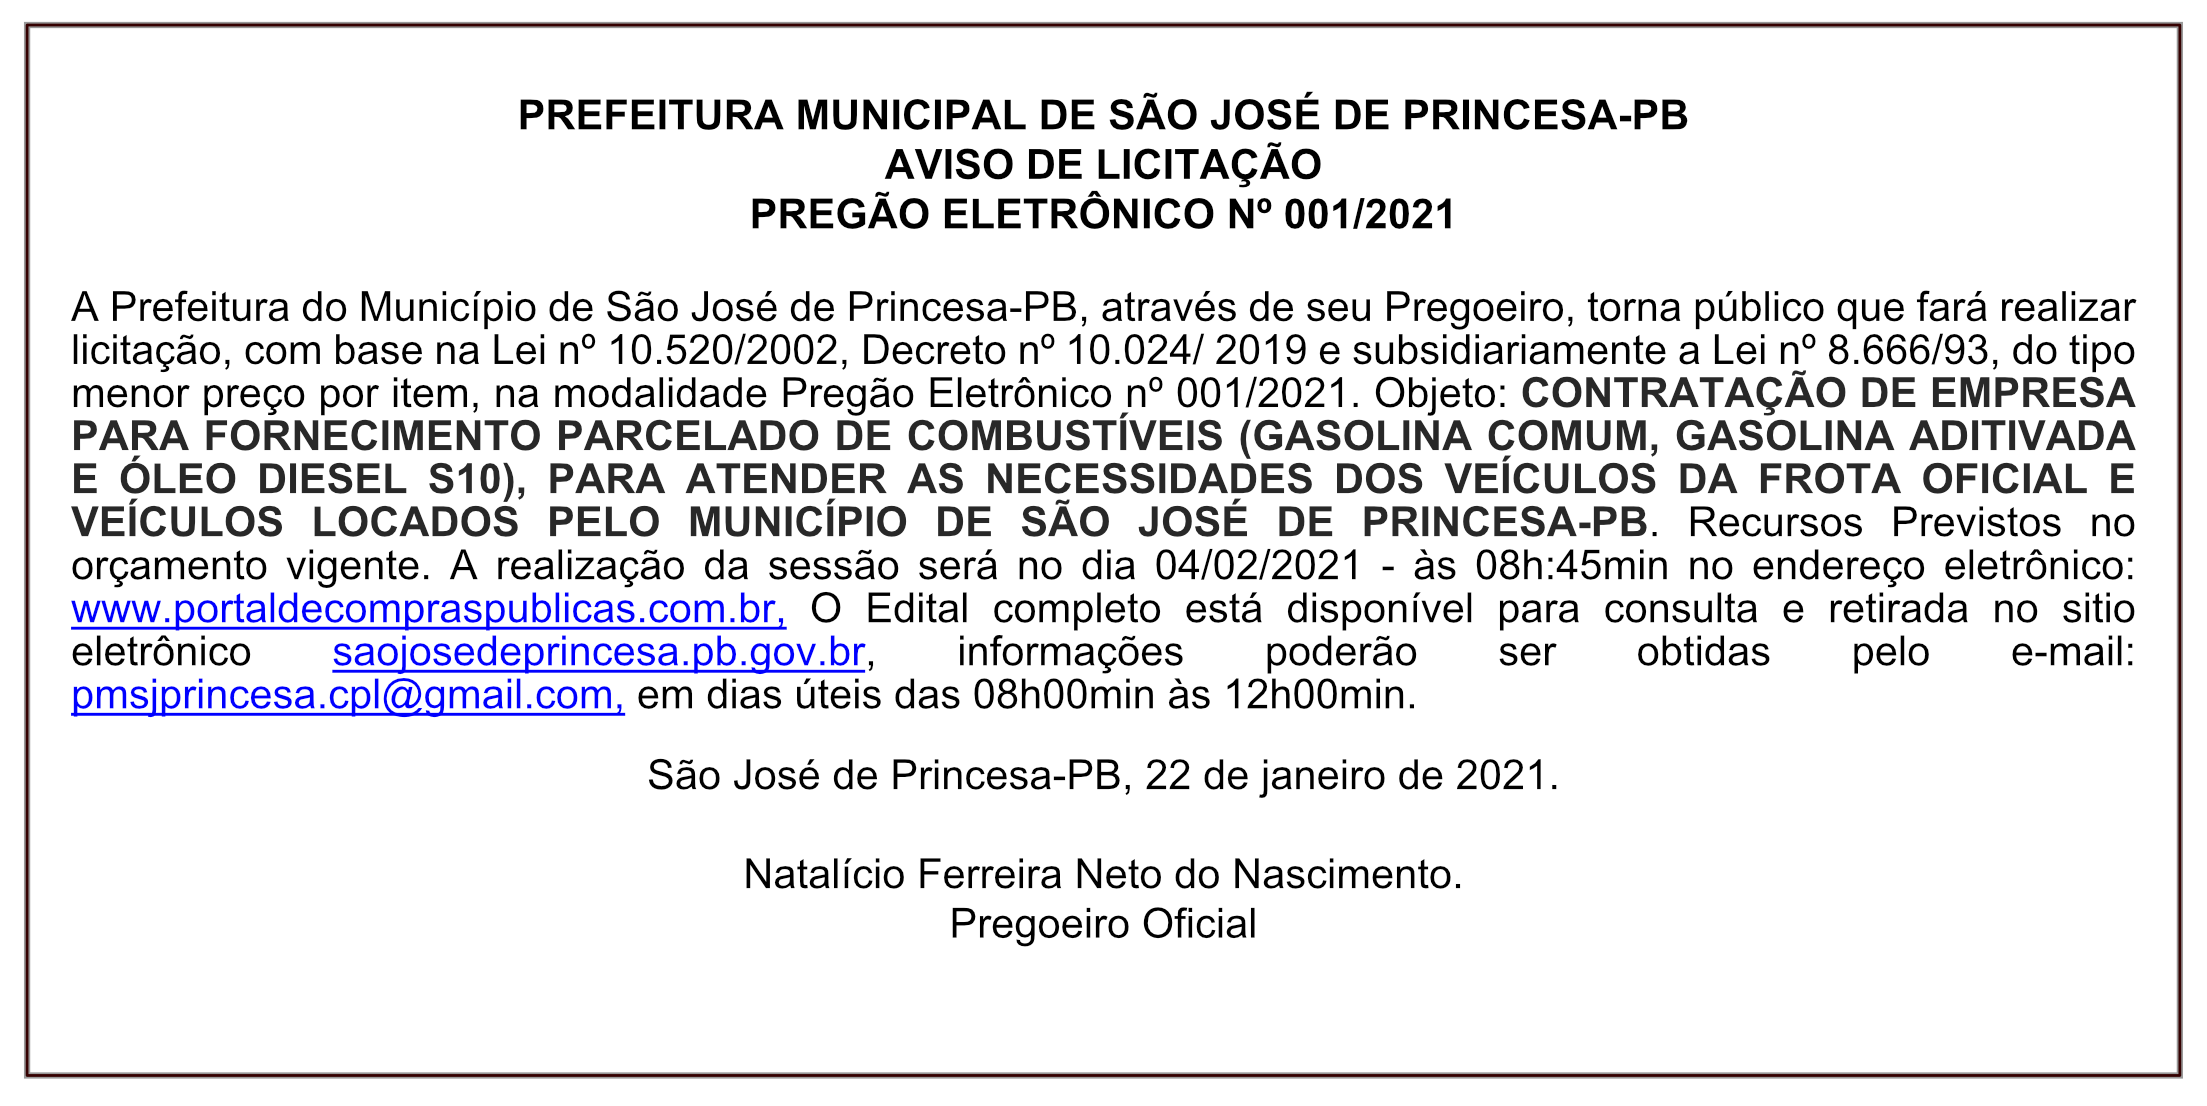 PREFEITURA MUNICIPAL DE SÃO JOSÉ DE PRINCESA – AVISO DE LICITAÇÃO – PREGÃO ELETRÔNICO Nº 001/2021